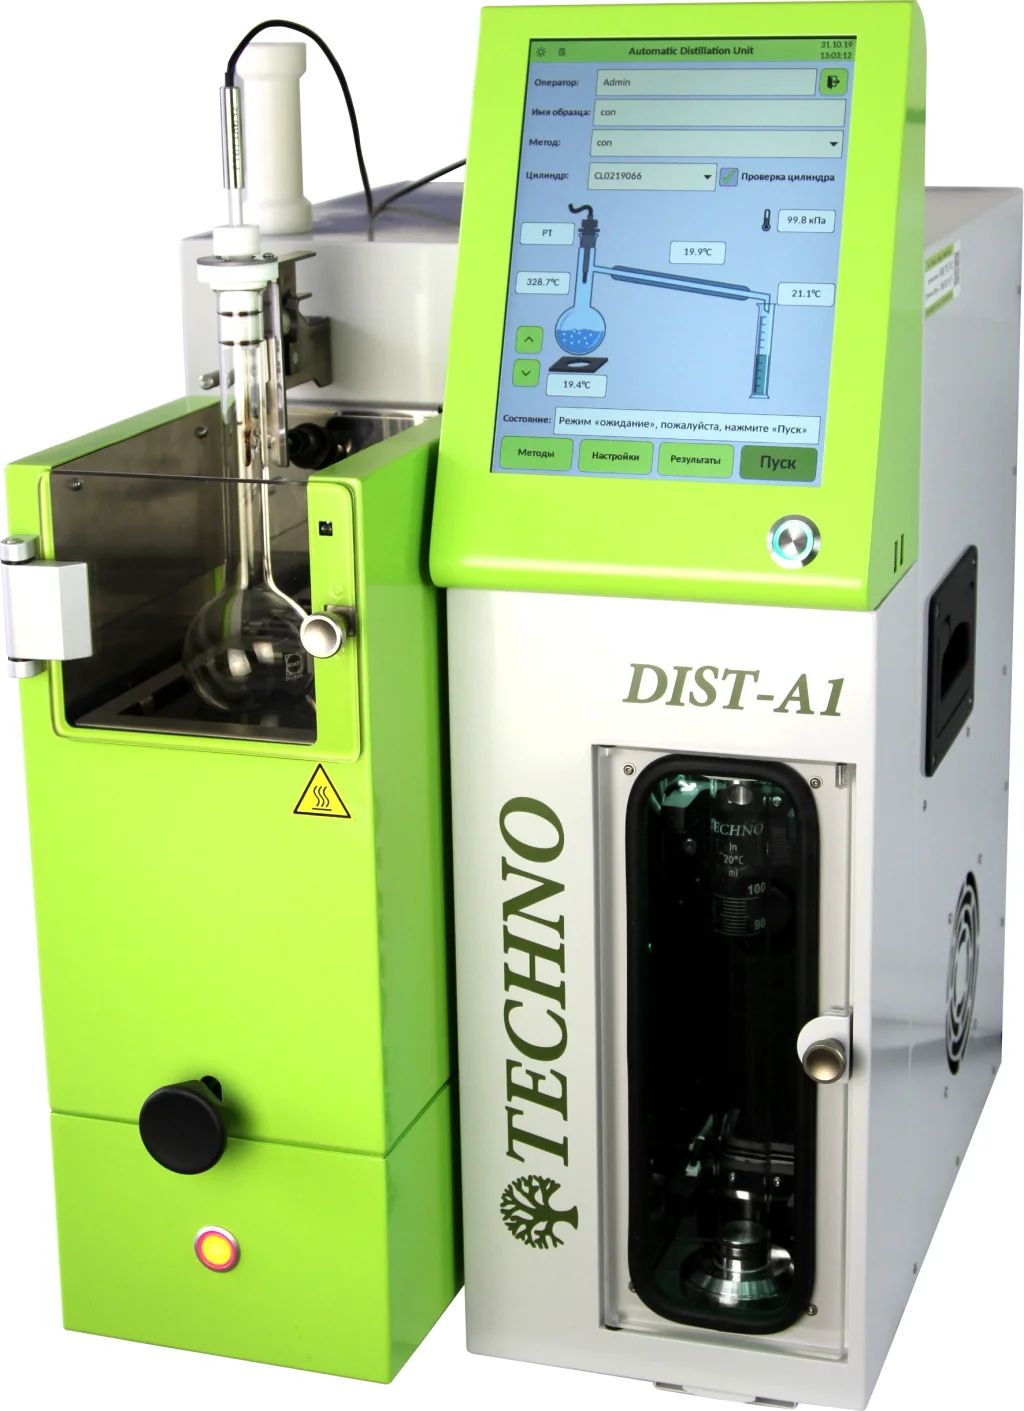 DIST-A1 Автоматический анализатор для определения фракционного состава нефти и нефтепродуктов при атмосферном давлении